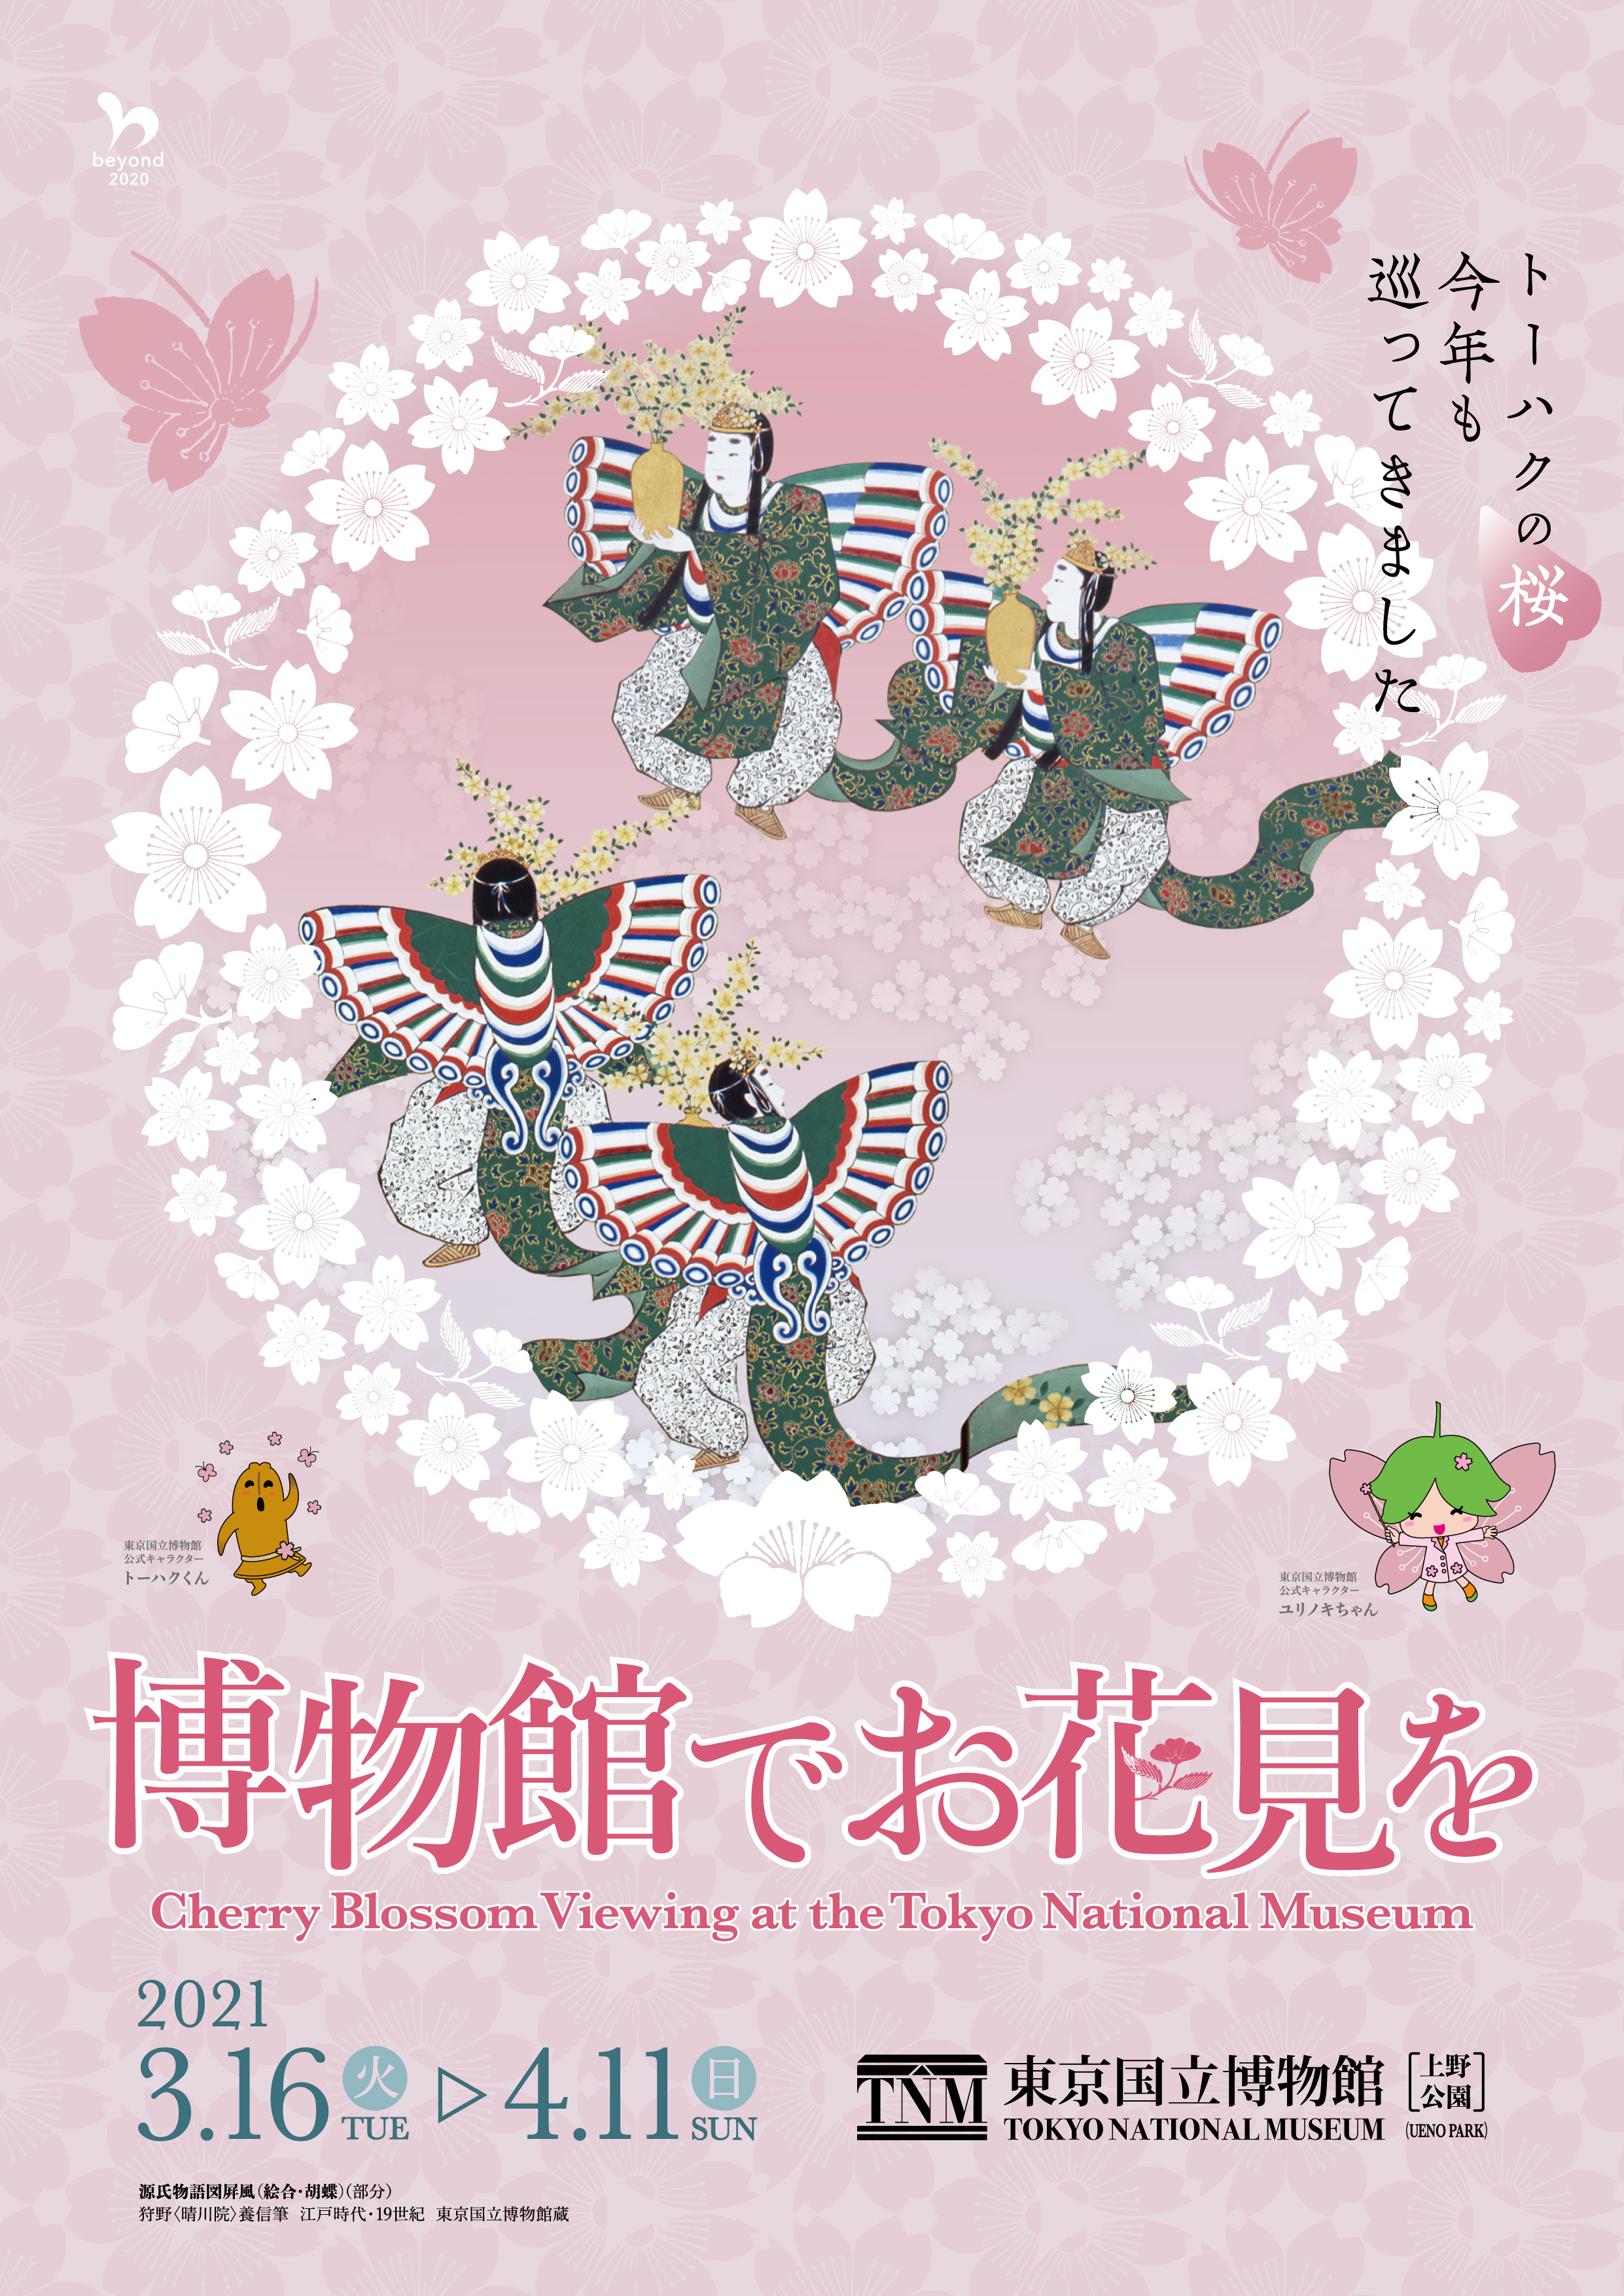 博物館でお花見を 21年3月16日 火 4月11日 日 に開催 アプリから参加できる さくらスタンプラリー も実施 東京国立博物館のプレスリリース